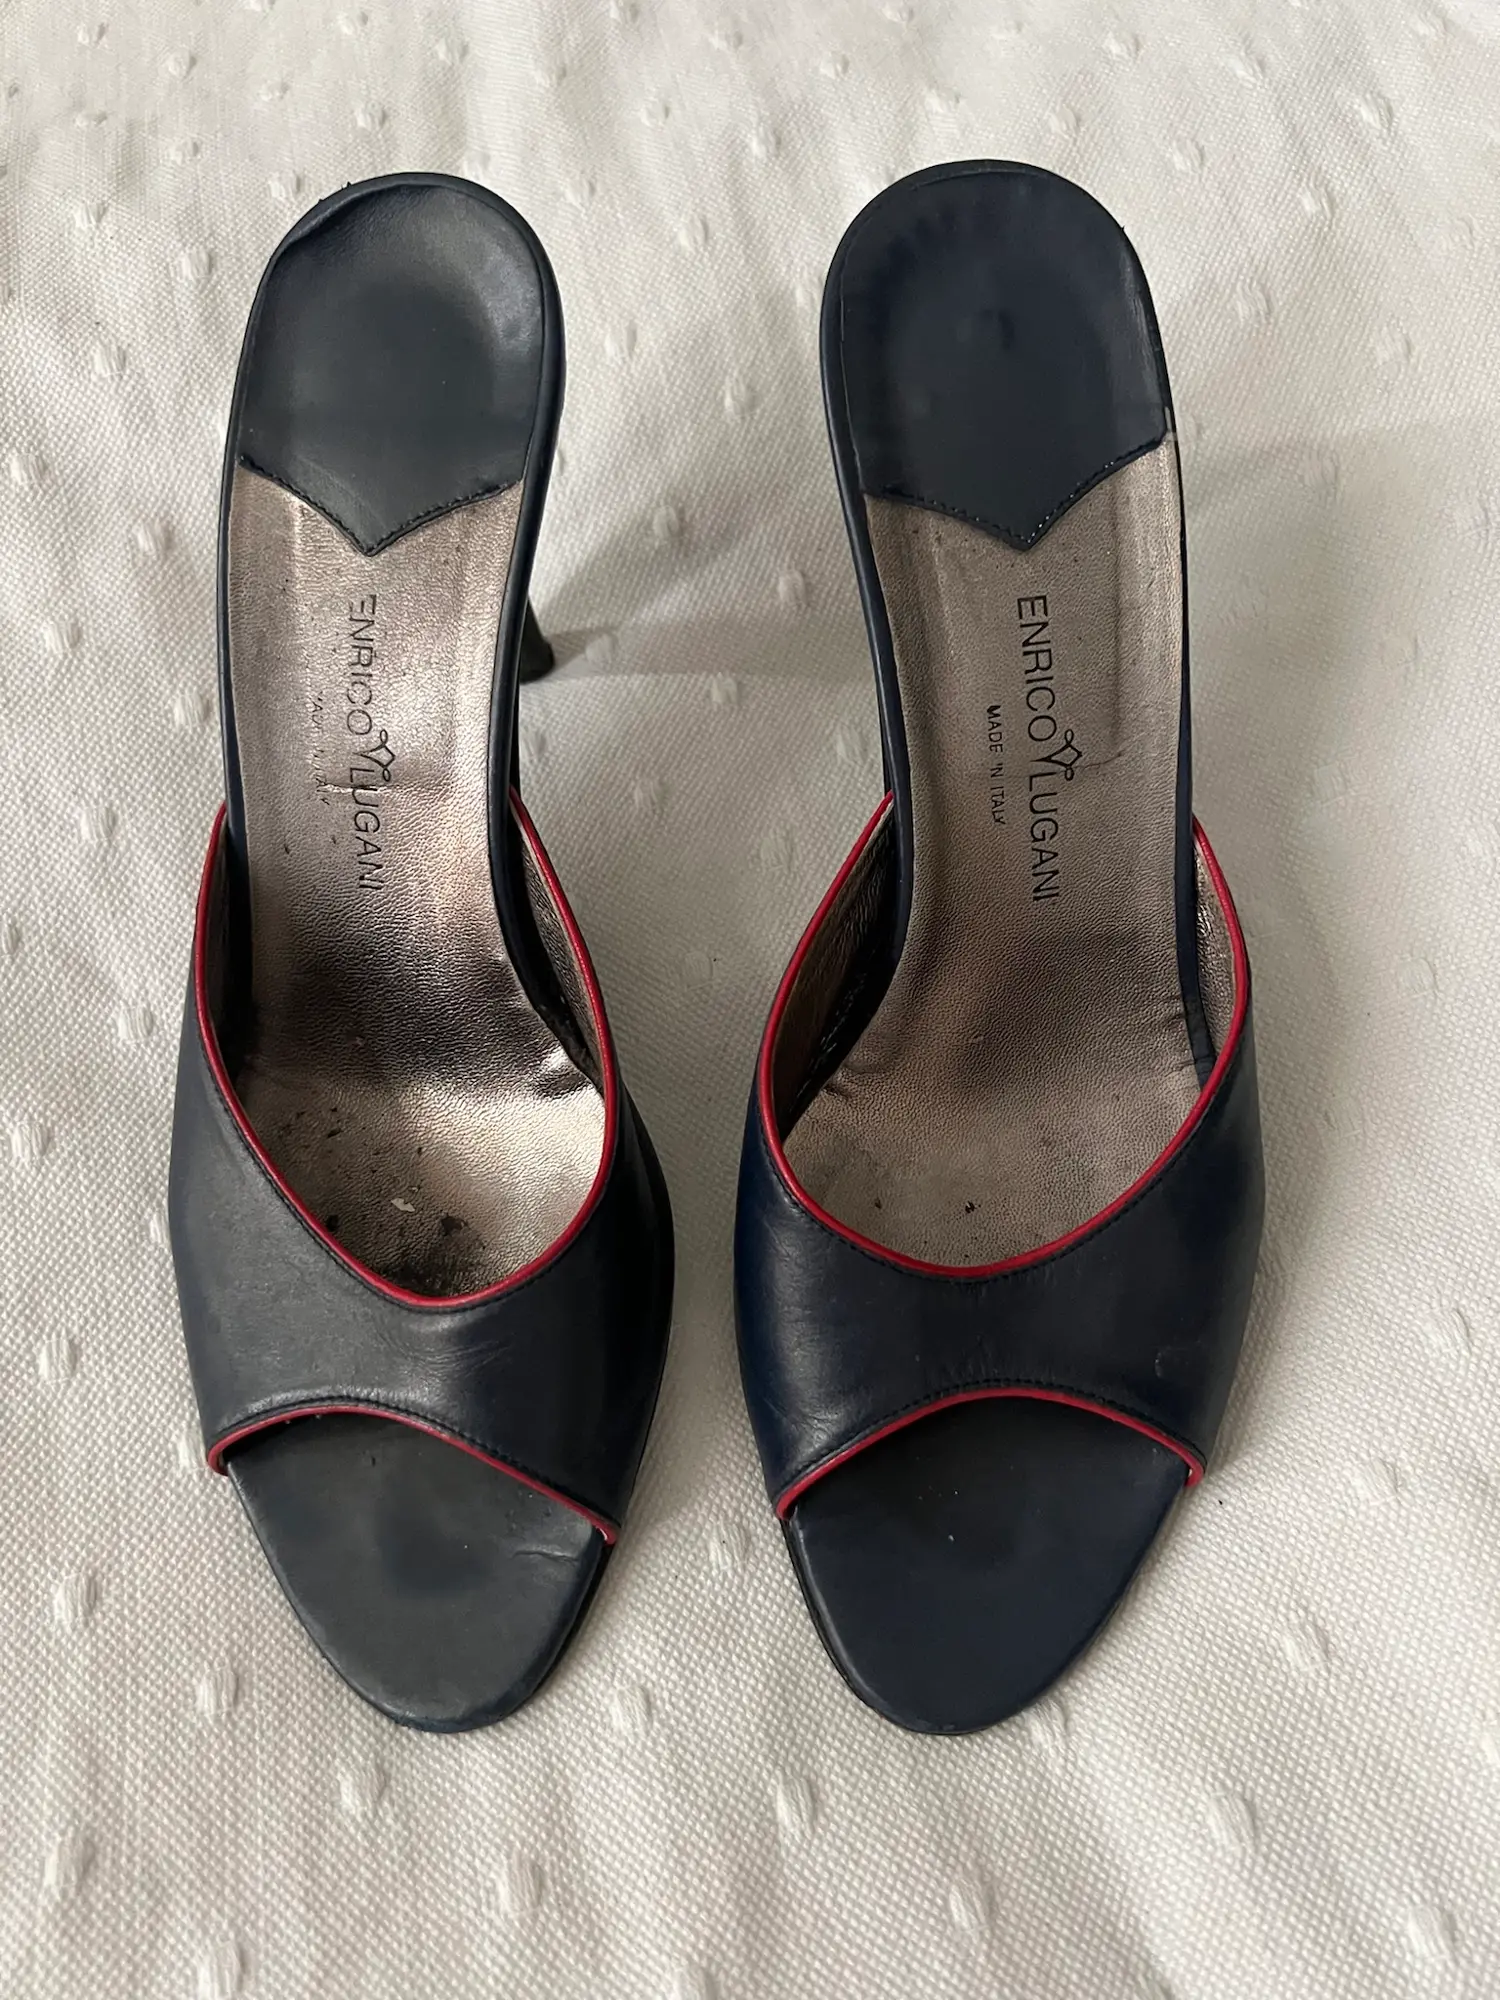 One Vintage heels